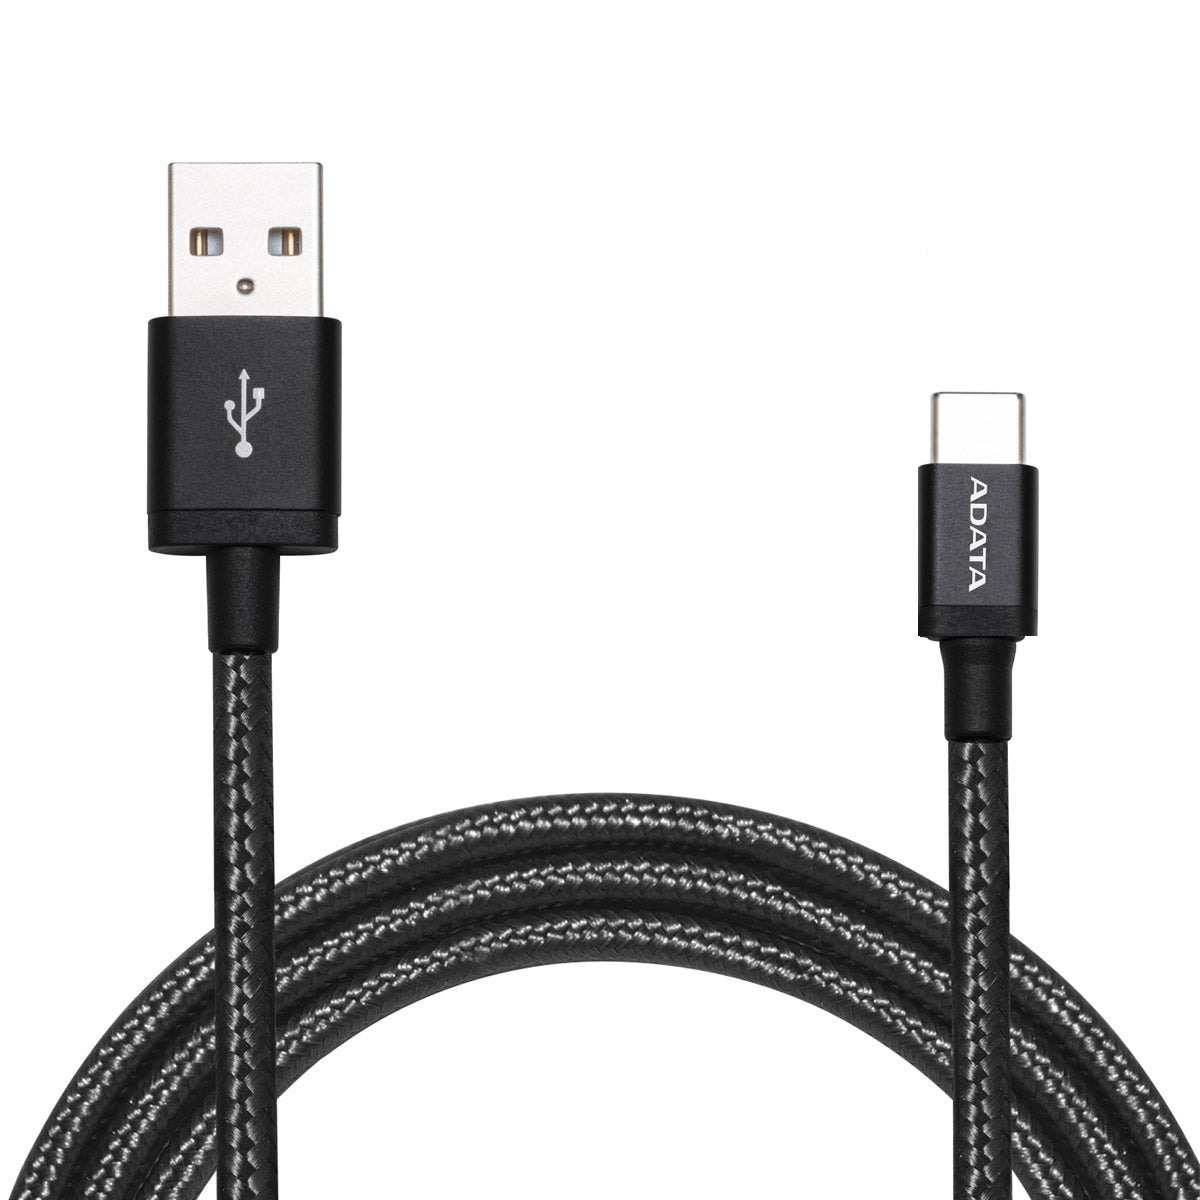 ADATA 2.4A फास्ट चार्जिंग नायलॉन ब्रेडेड USB-C सिंक और चार्ज केबल रिवर्सिबल डिज़ाइन के साथ - काला